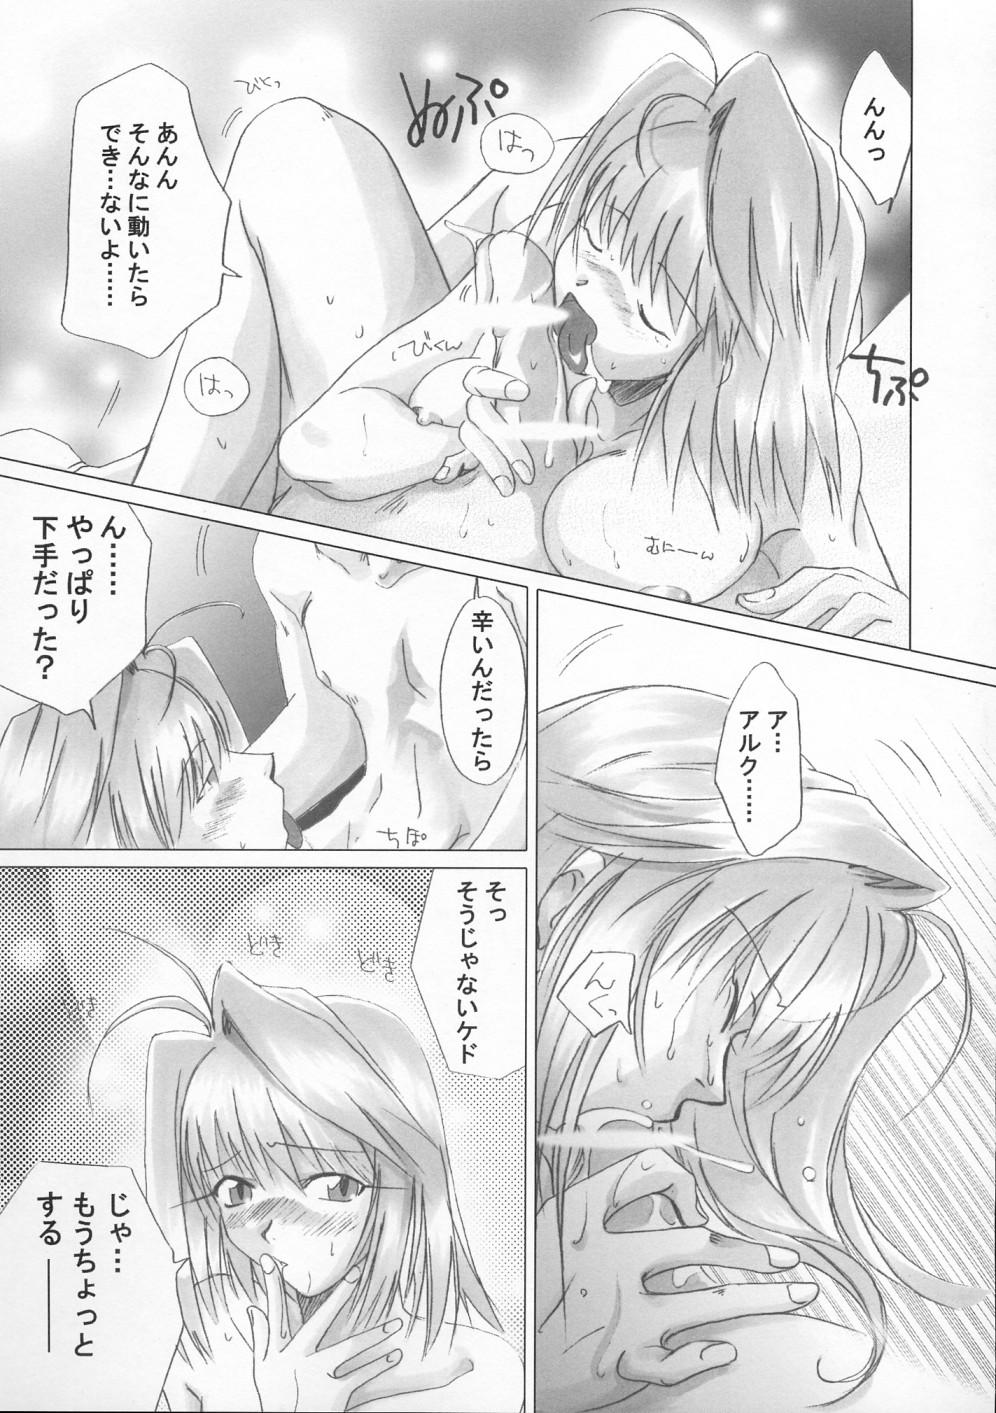 Juicy Gekka Bijin - Tsukihime Moms - Page 8